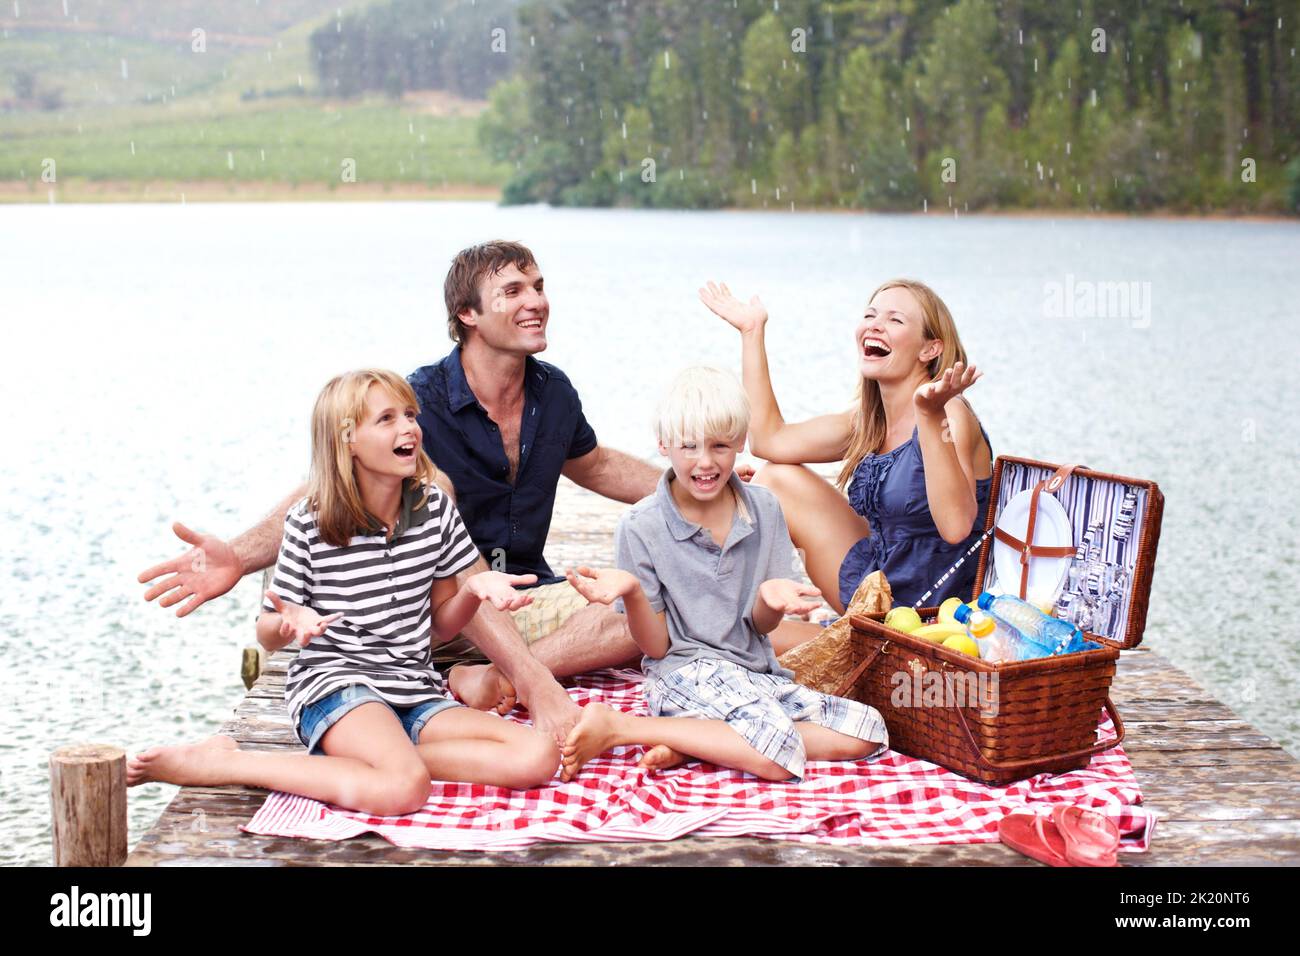 Spaß haben, egal was passiert. Lächelnde junge Familie lacht beim Picknicken, als es zu regnen beginnt. Stockfoto